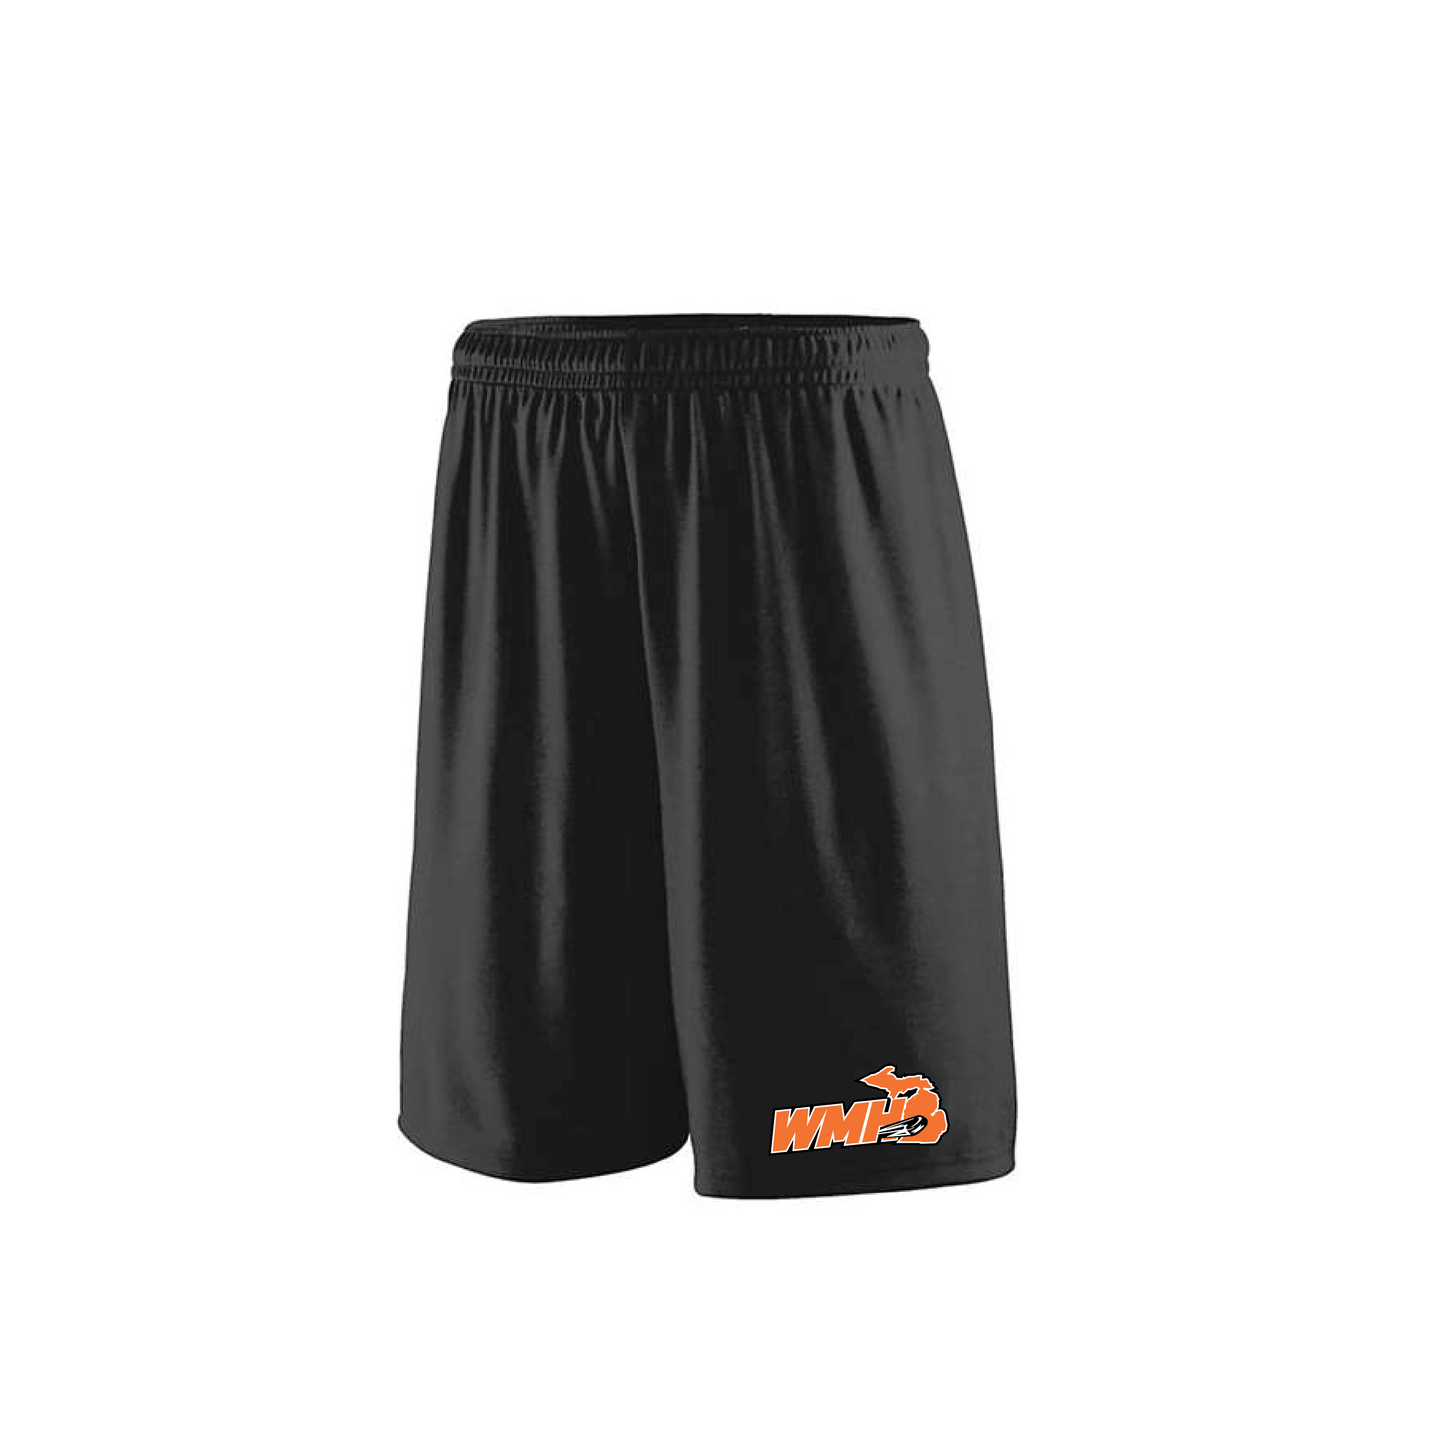 WMHO Shorts